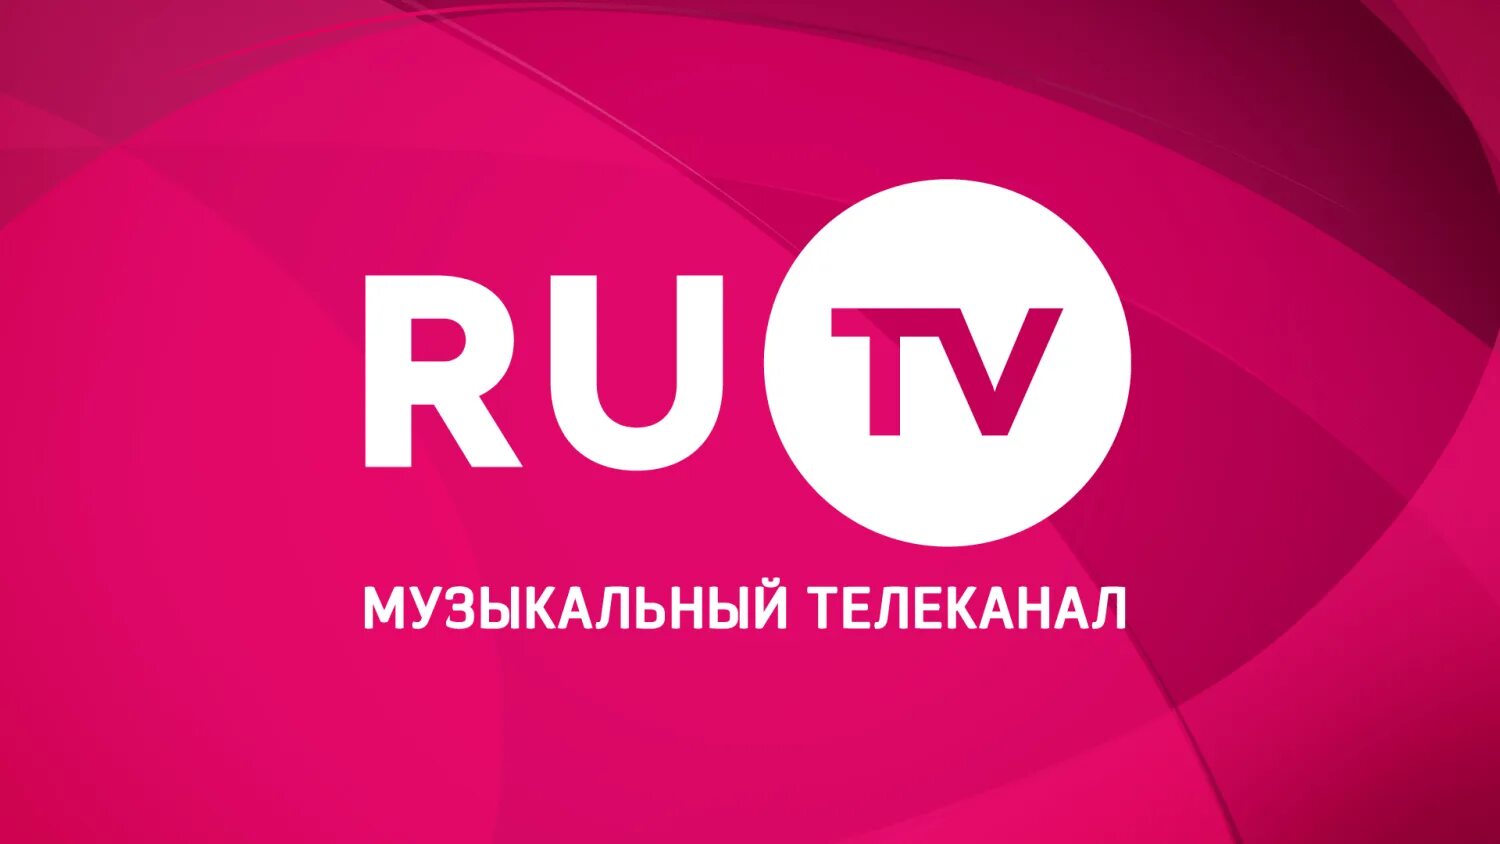 Ру тв линк. Ру ТВ. Ру ТВ логотип. Телеканал ru TV. Ру ТВ музыкальный канал.